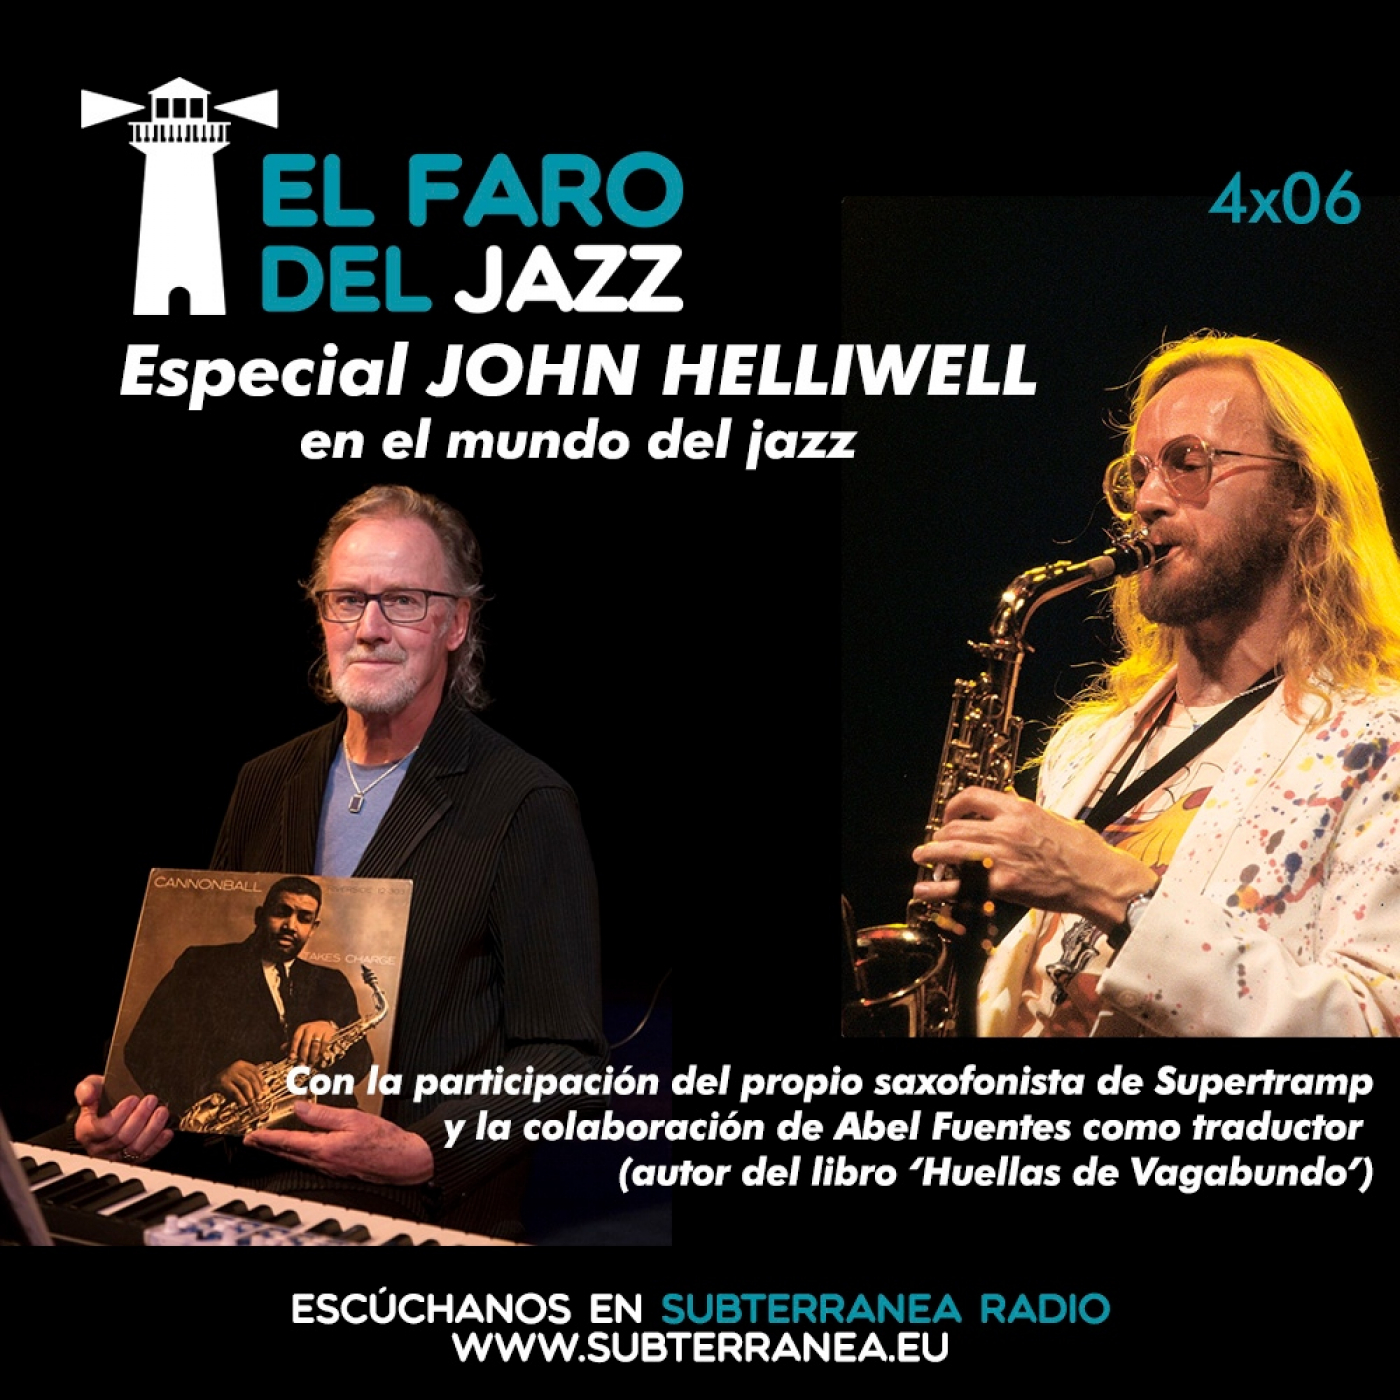 El faro del jazz - 4x06 - John Helliwell en el mundo del jazz